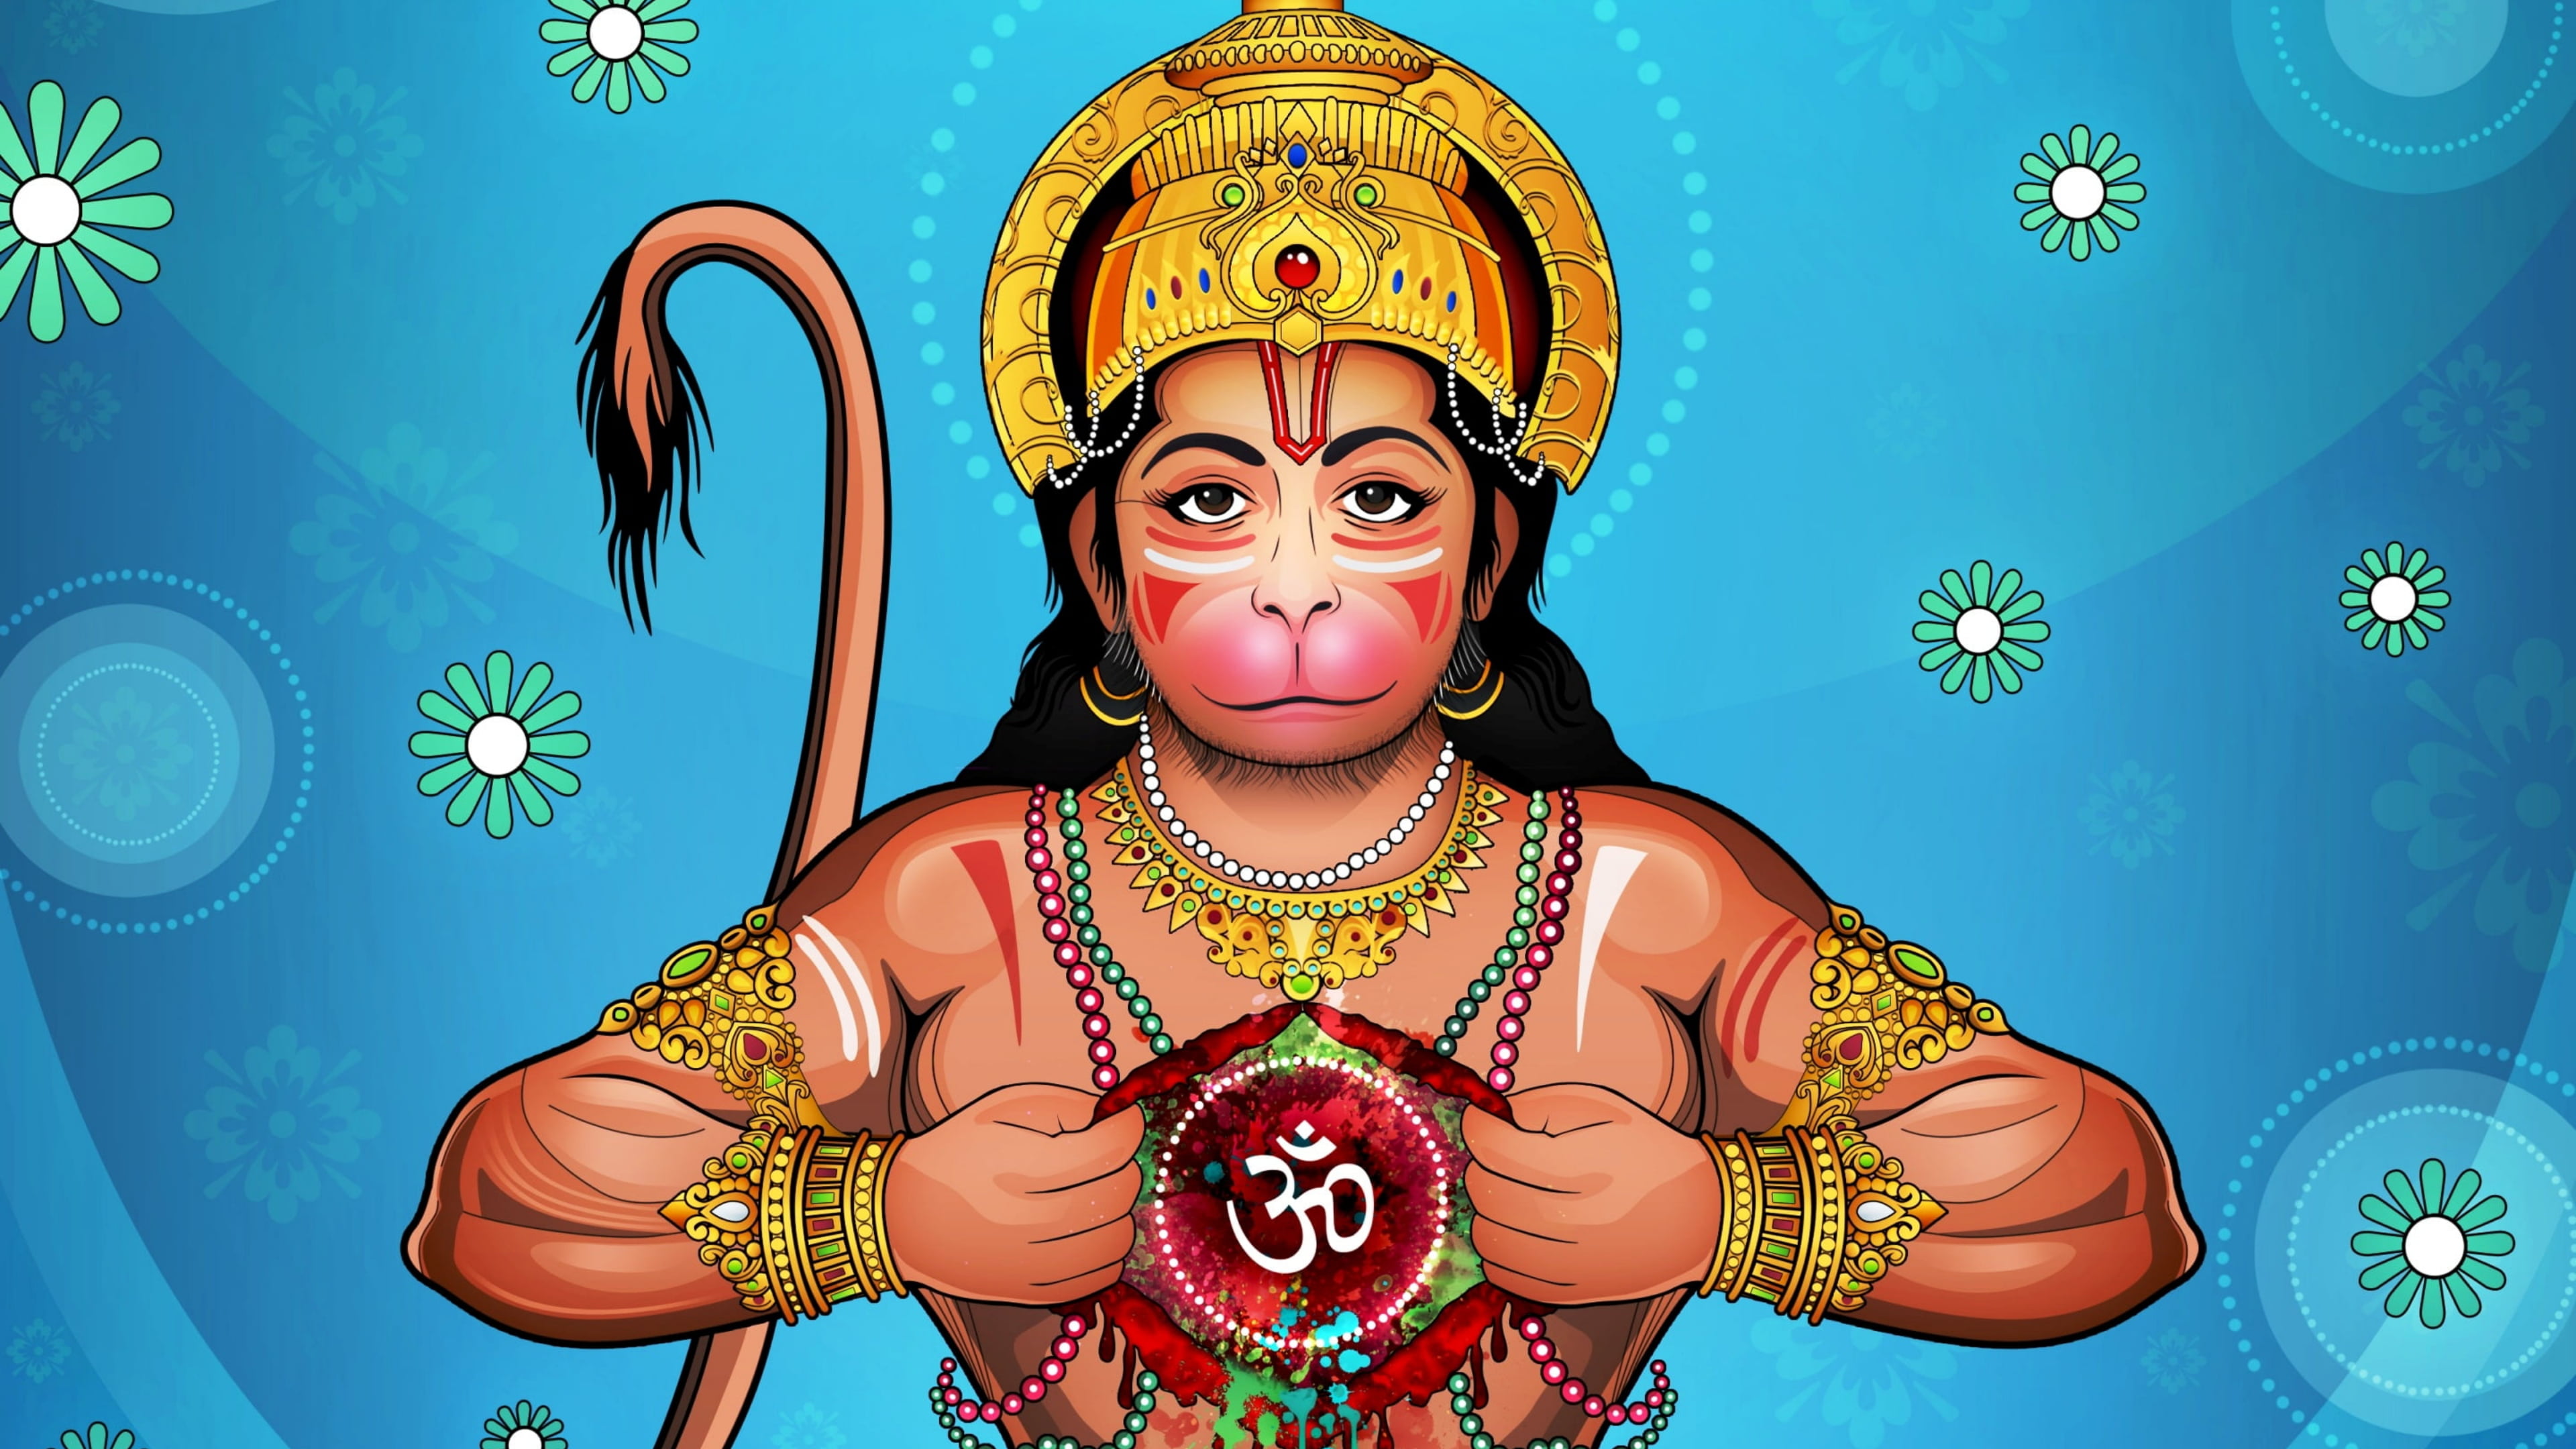 Hindu Gods, Lord Hanuman, Jai Shree Ram, India